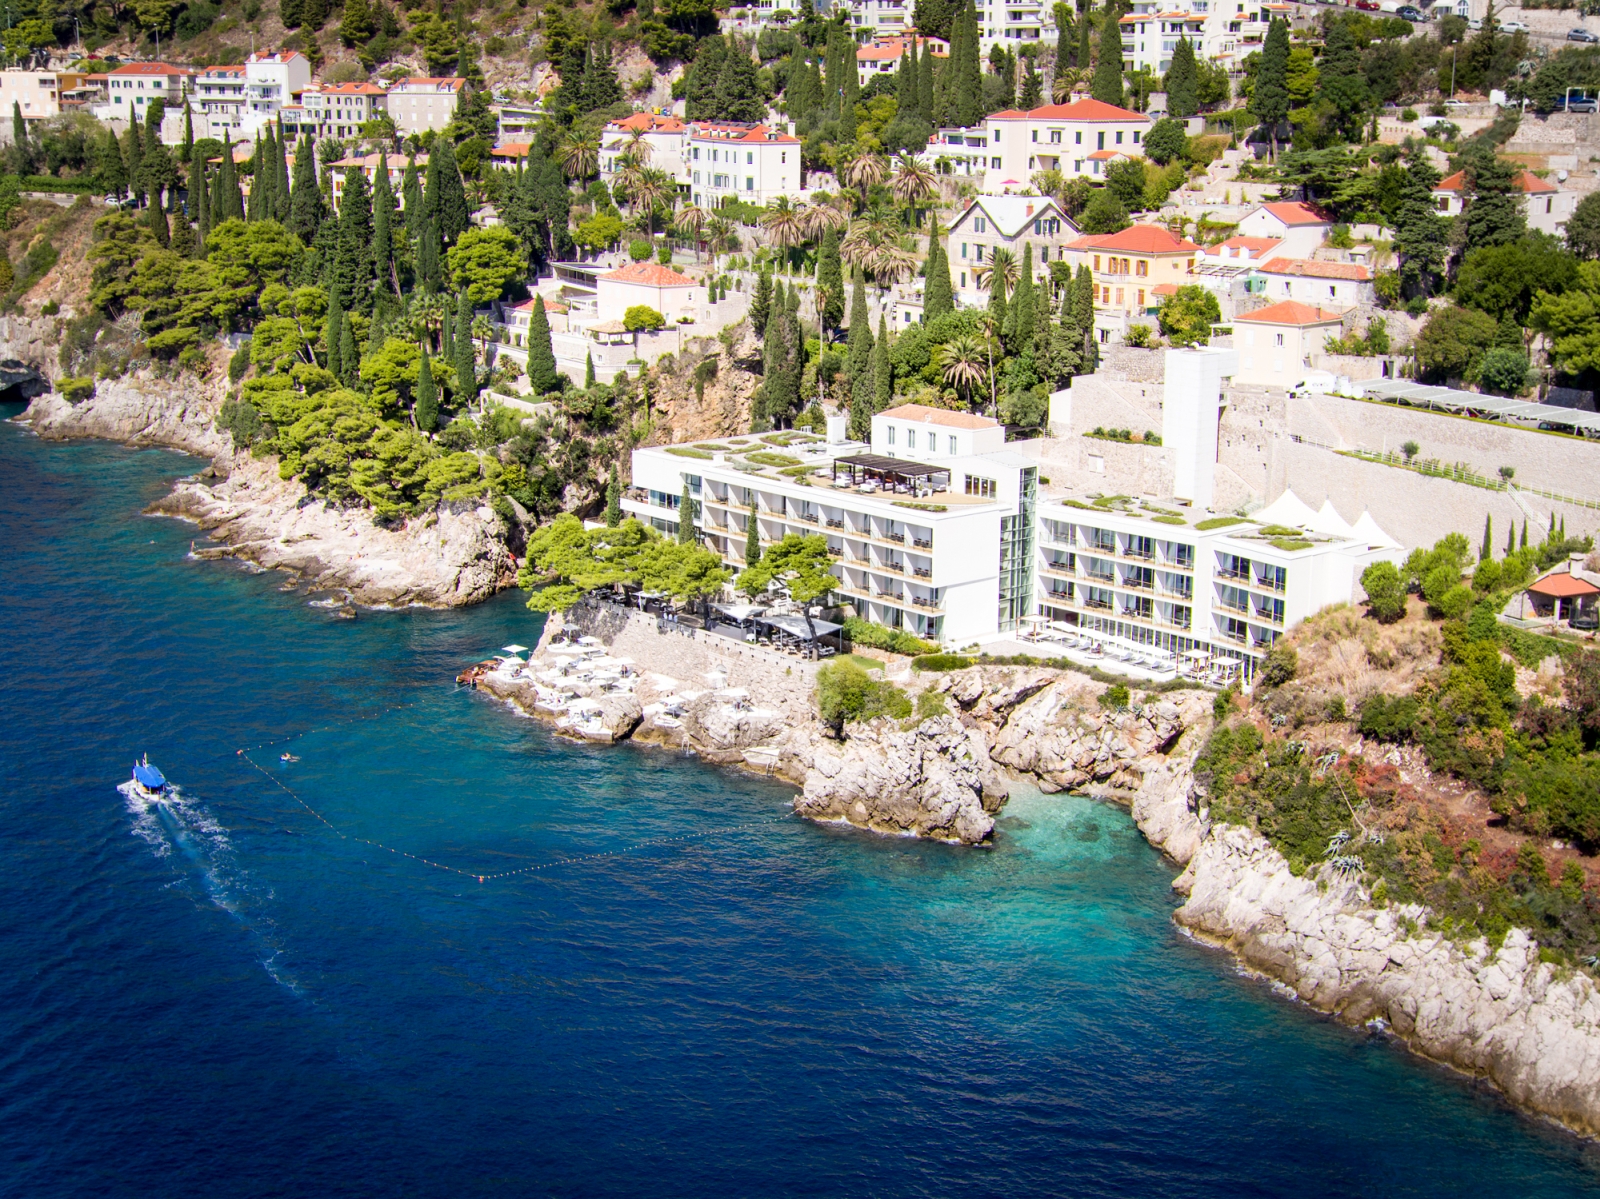 Aerial view of luxury hotel Villa Dubrovnik in Croatia